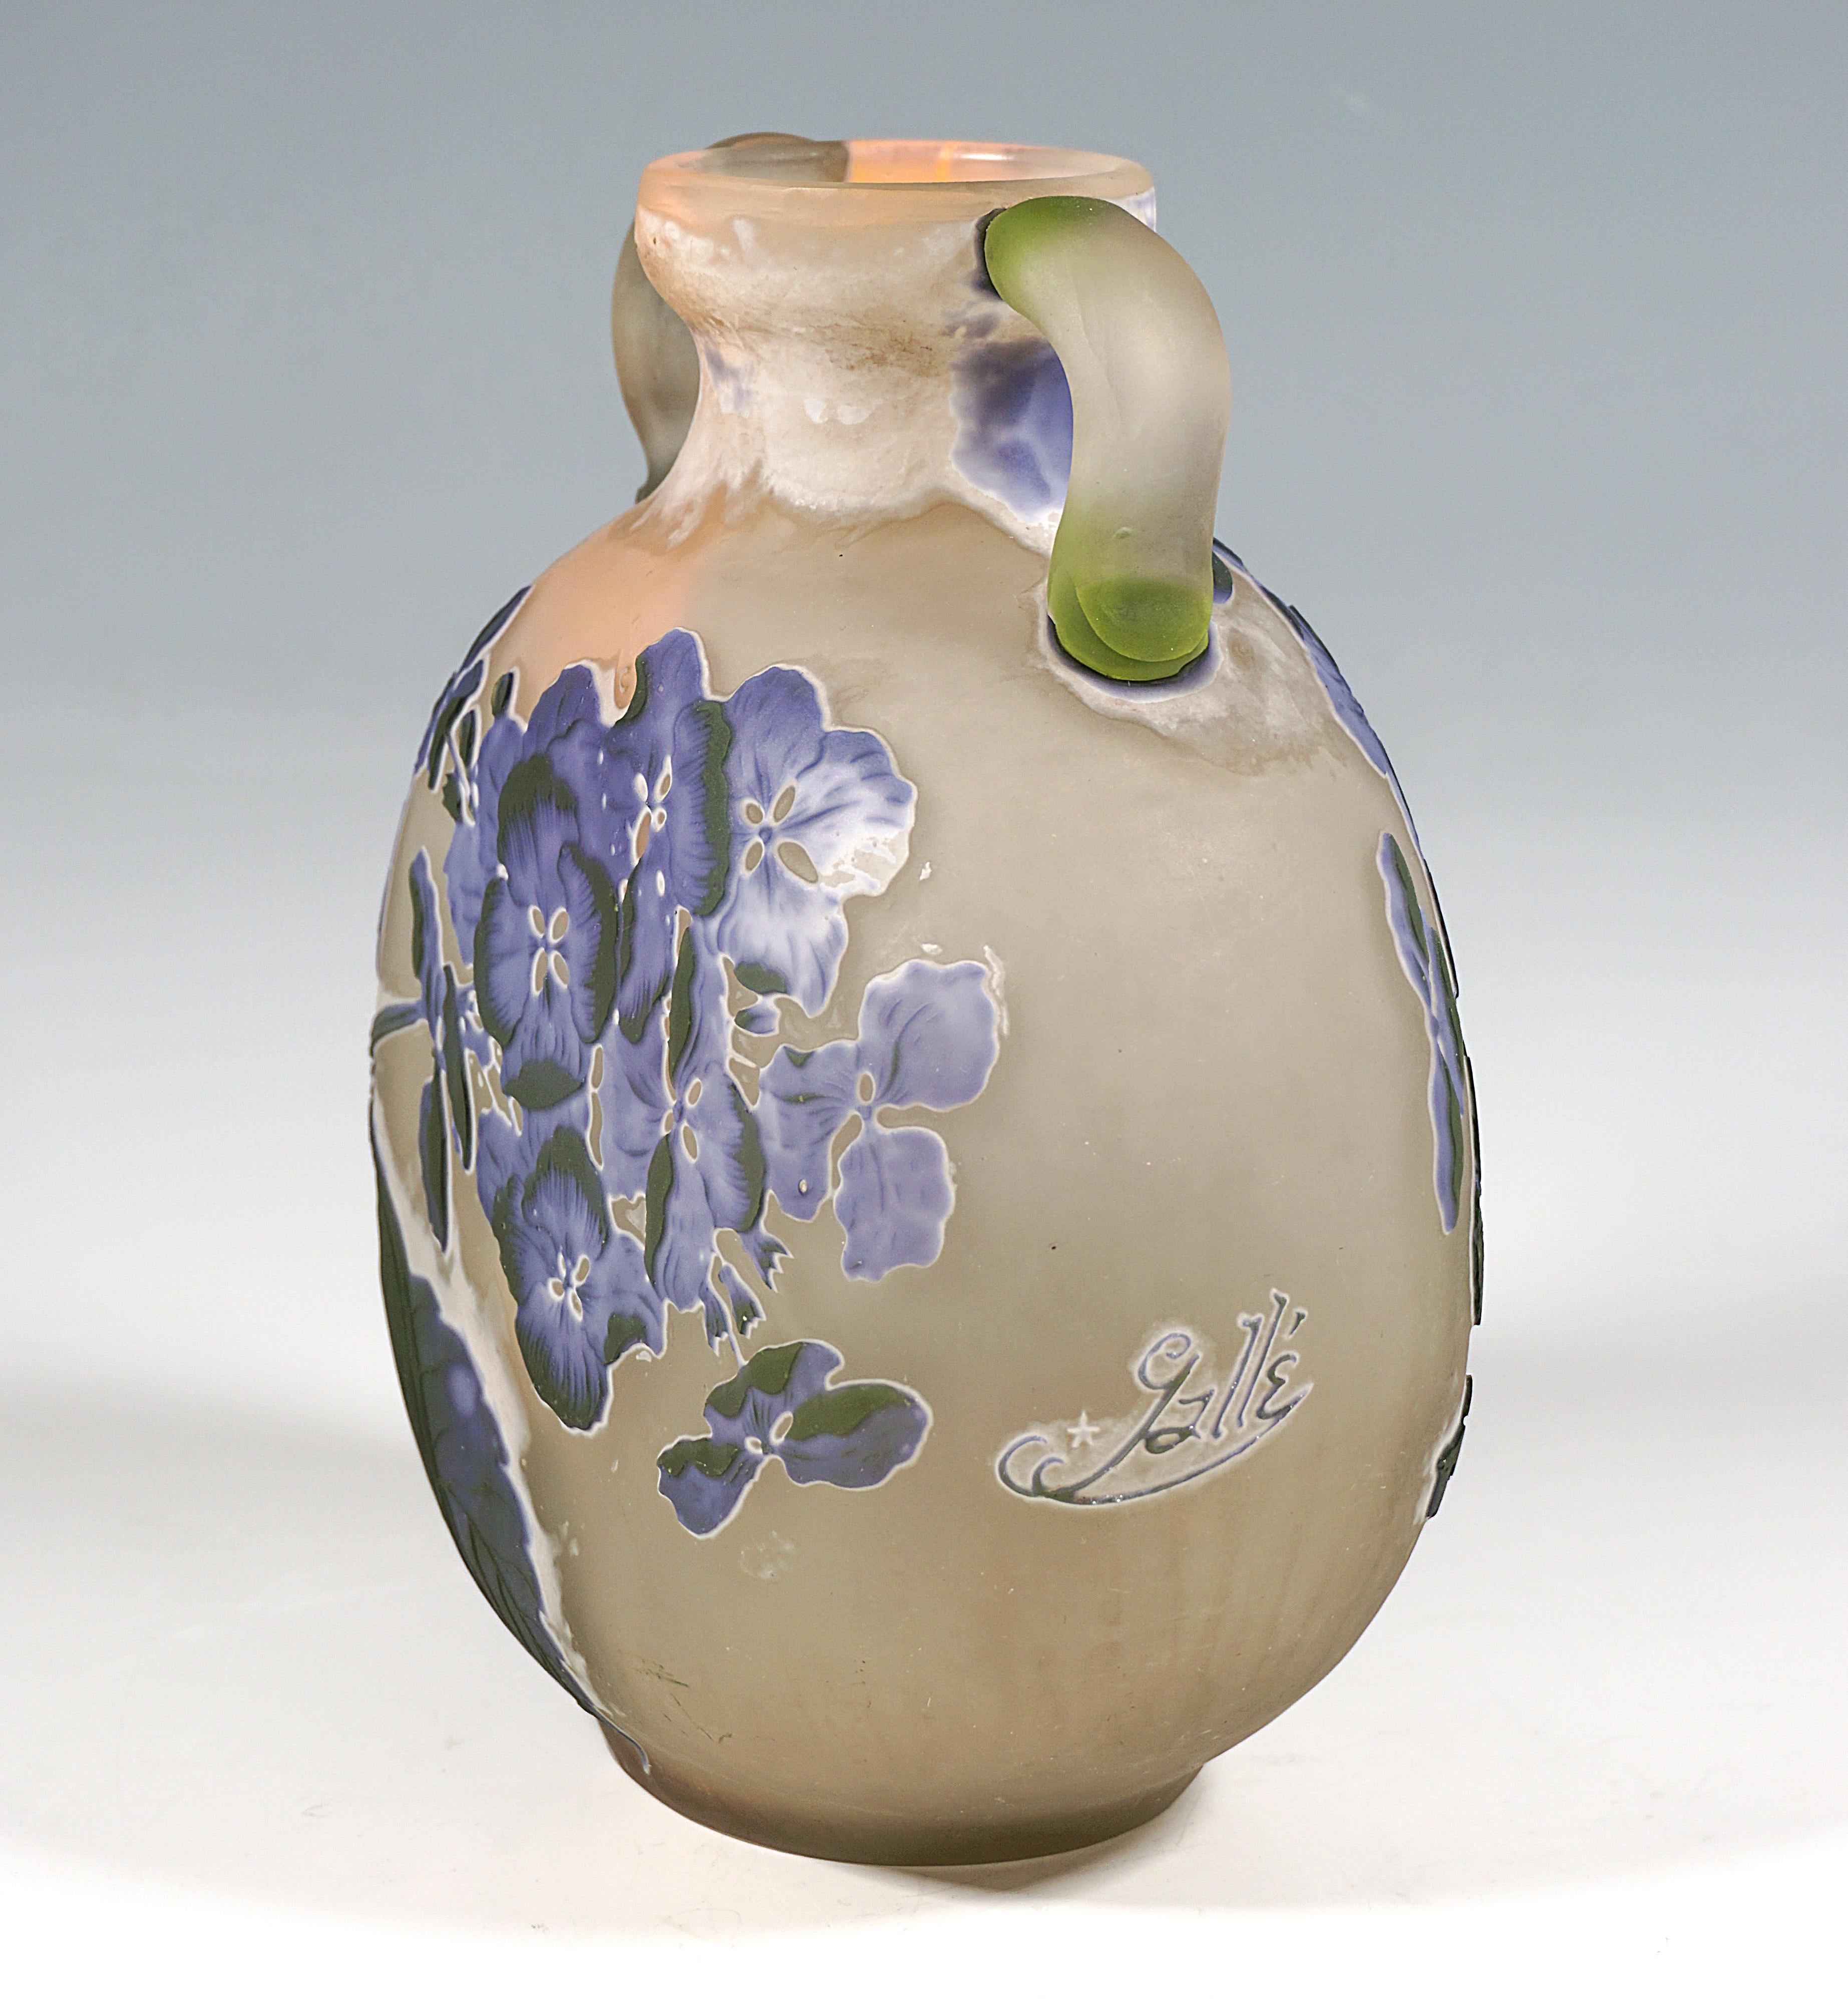 French Émile Gallé Round Art Nouveau Cameo Handle Vase With Hydrangea Decor France 1905 For Sale